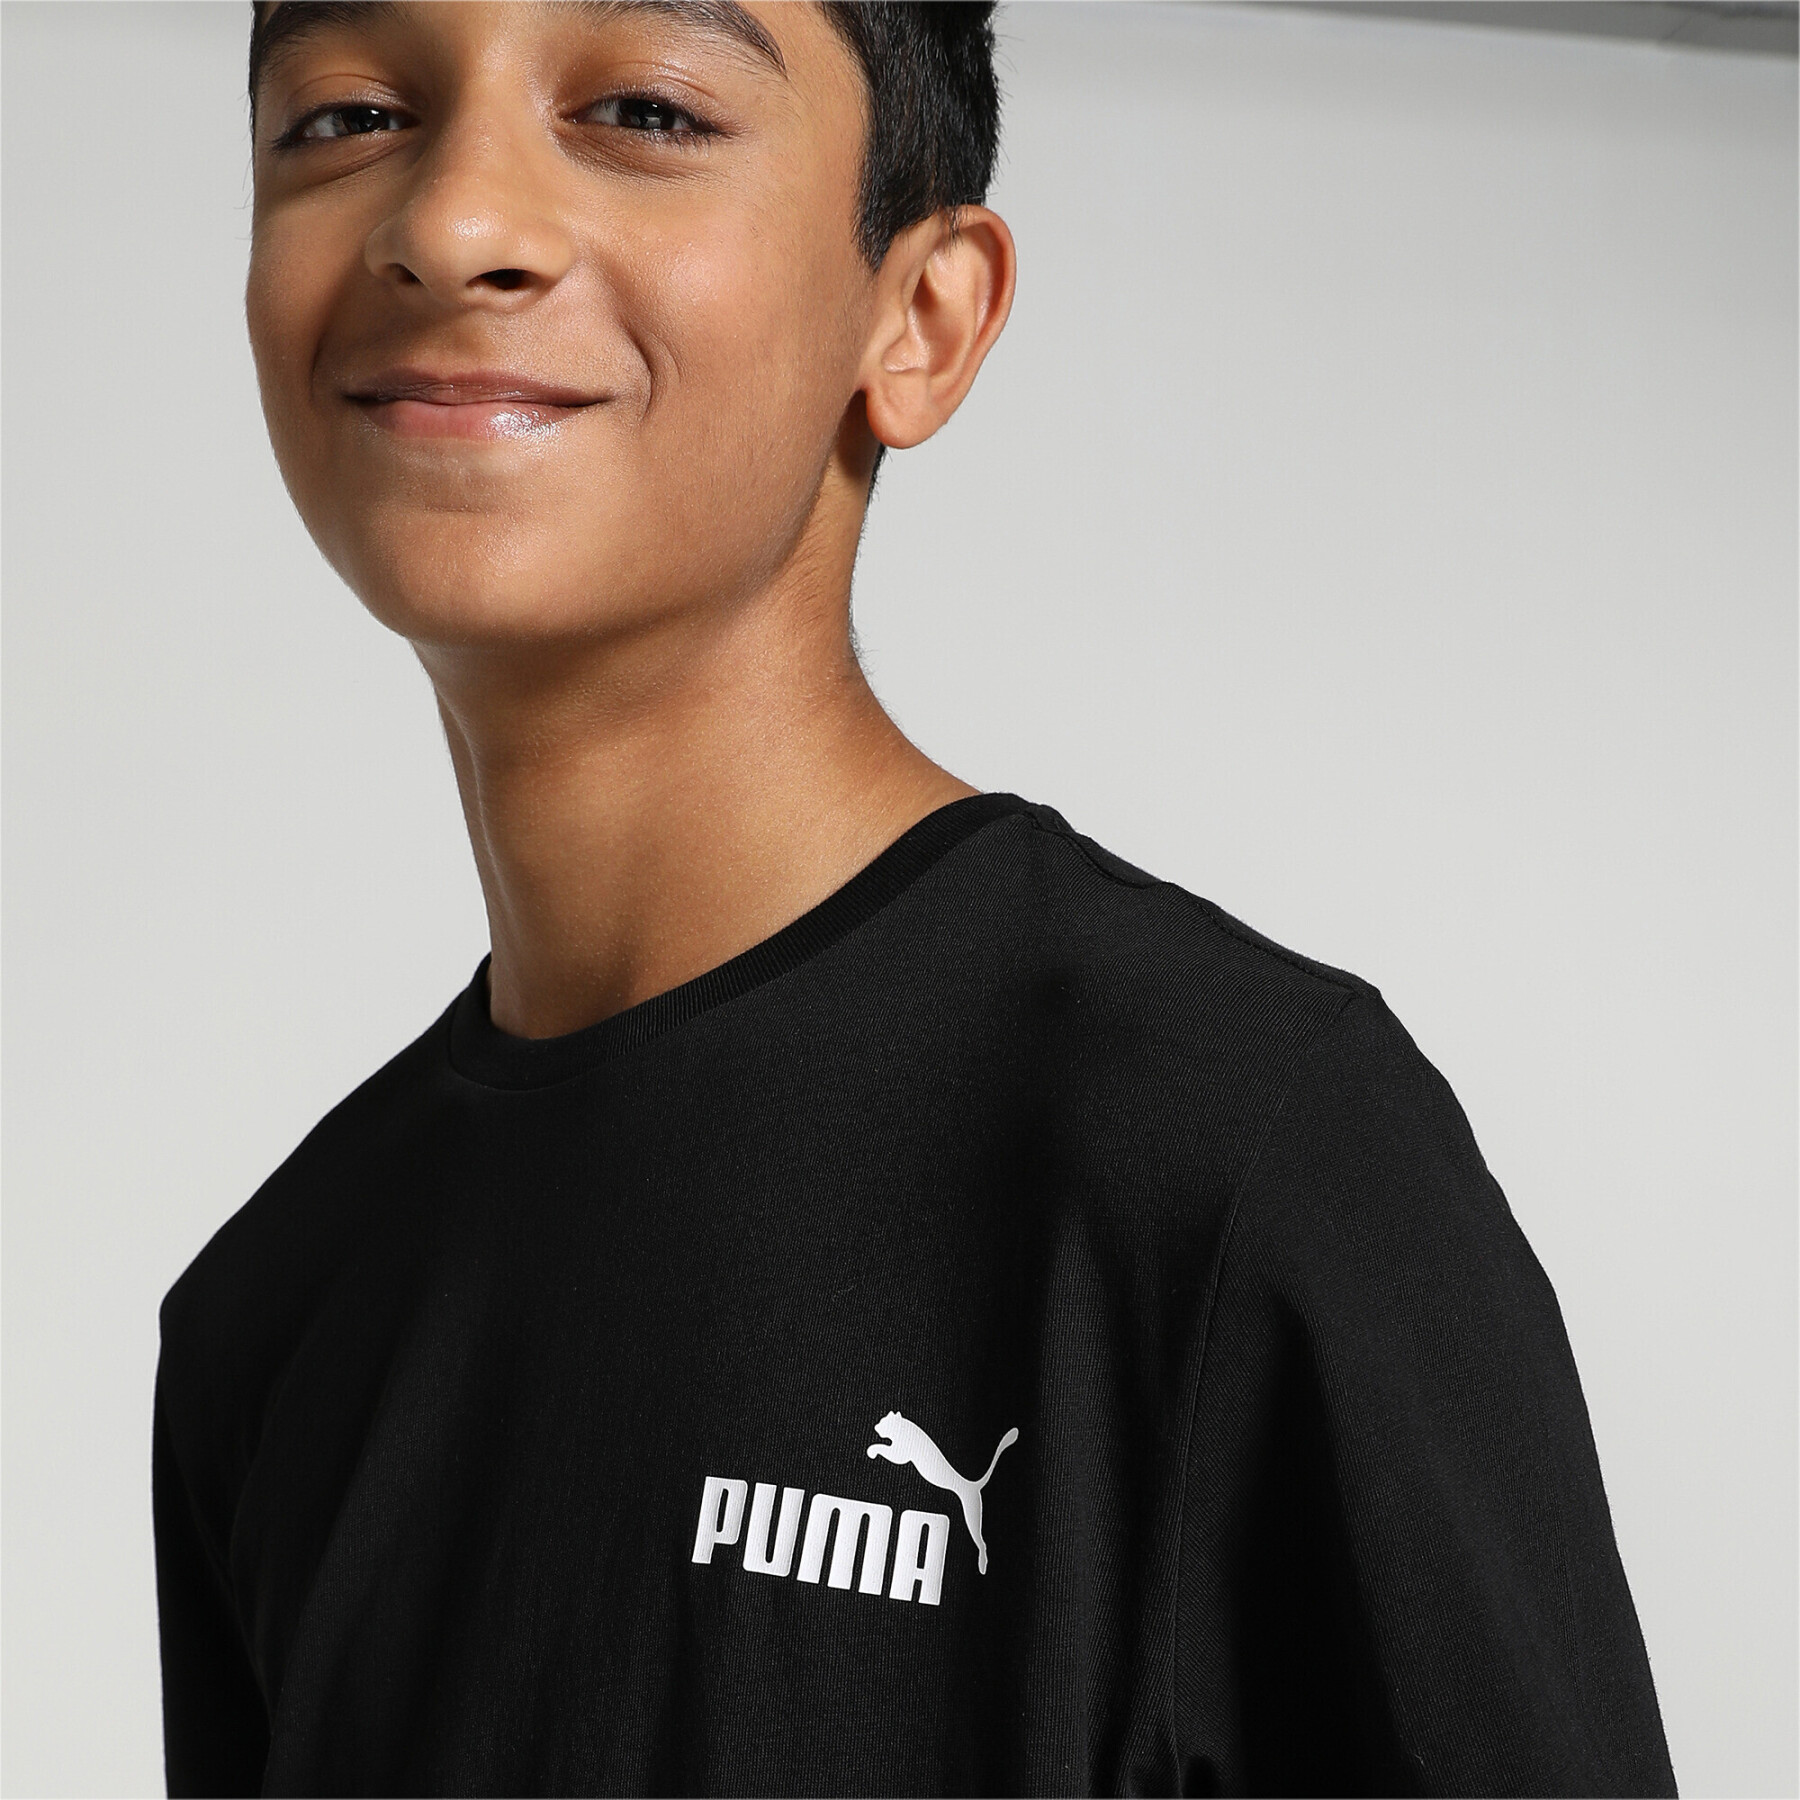 T-Shirt Puma Ess Small Logo